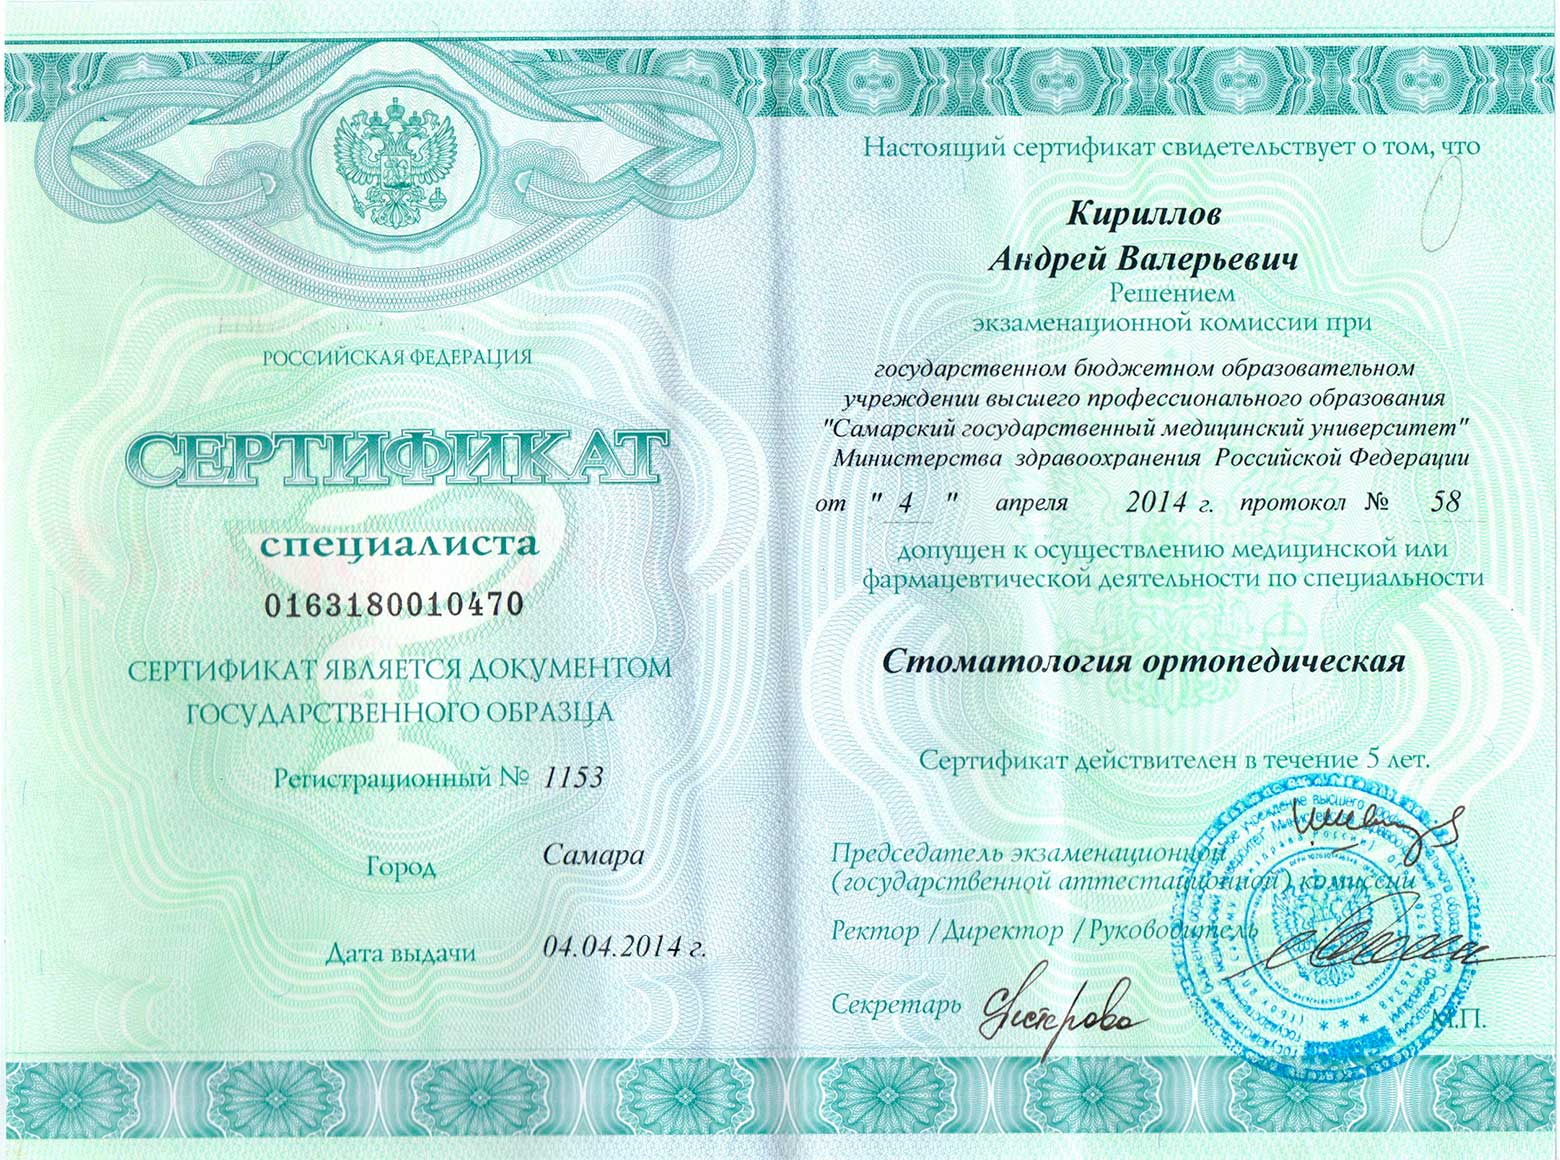 Сертификат Кириллов Андрей Валерьевич